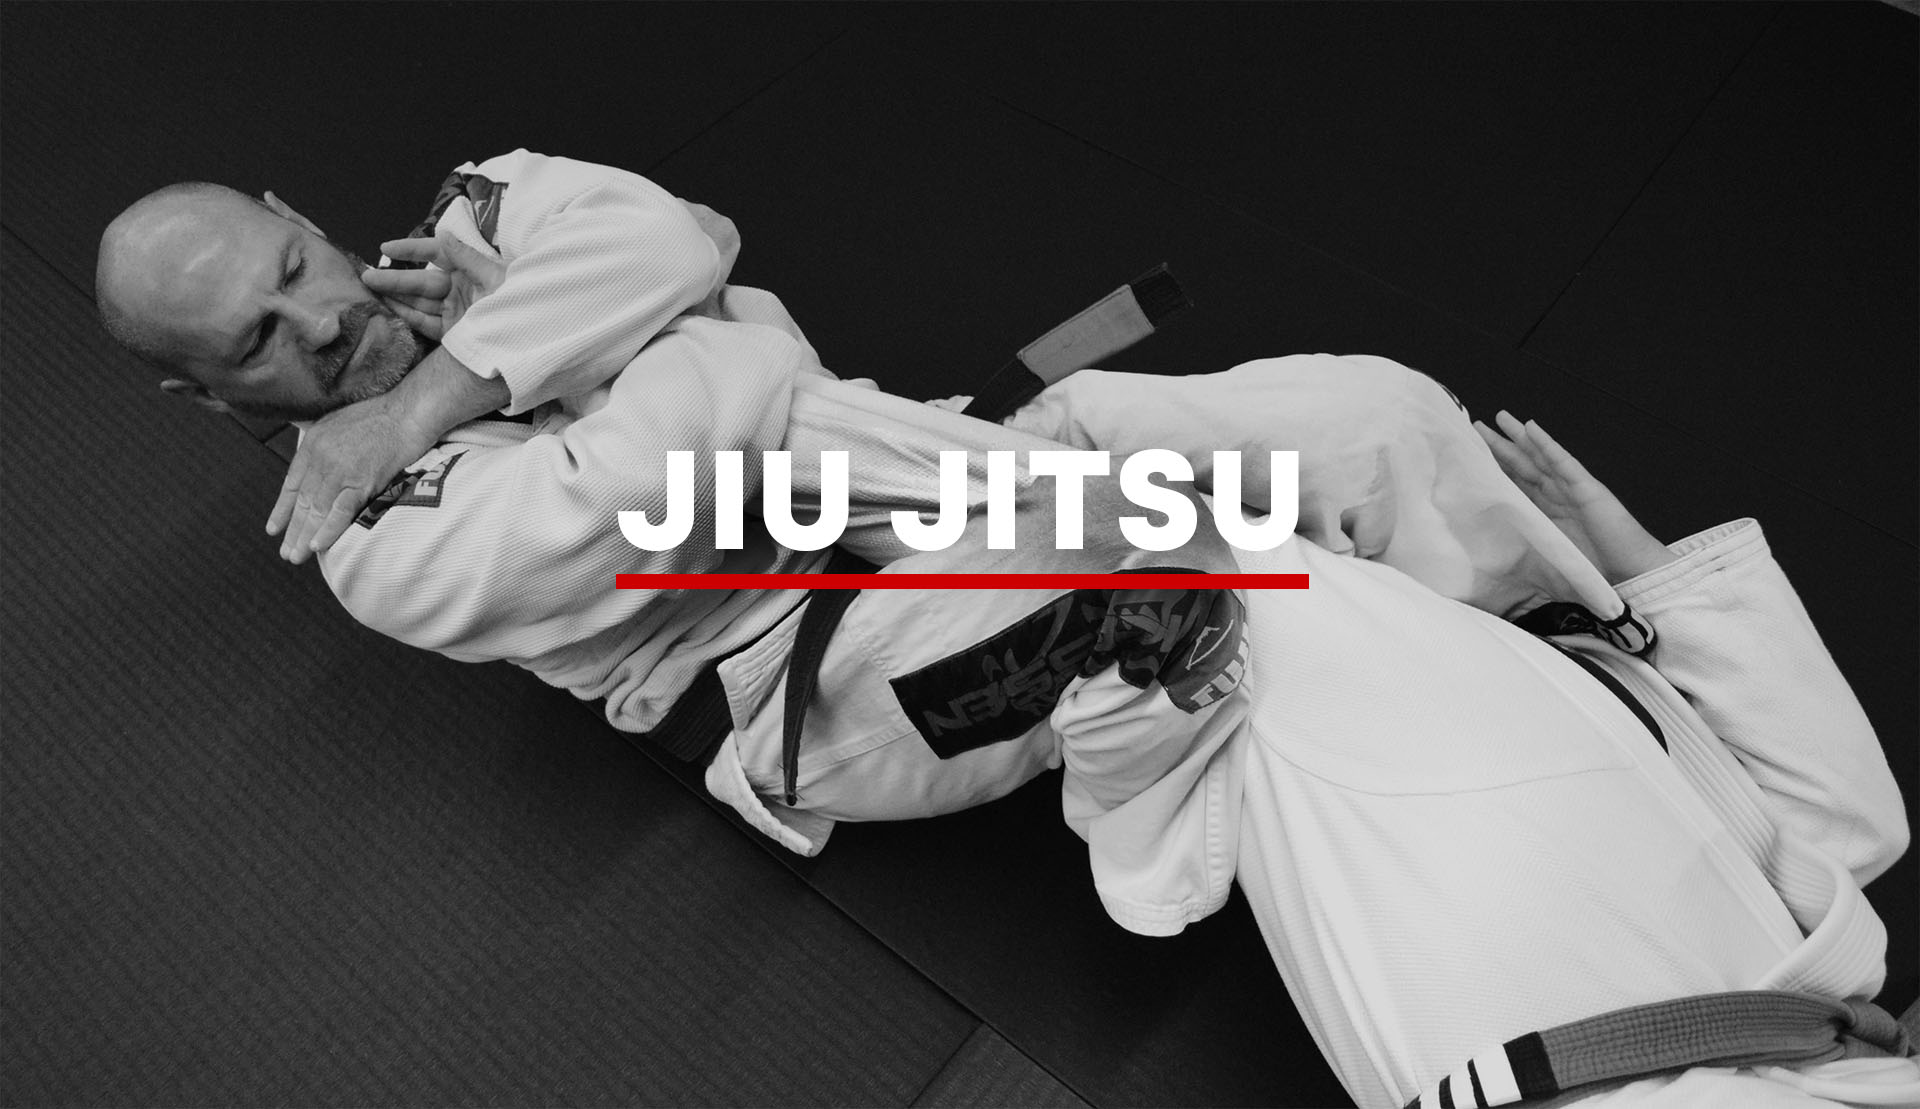 Jiu Jitsu